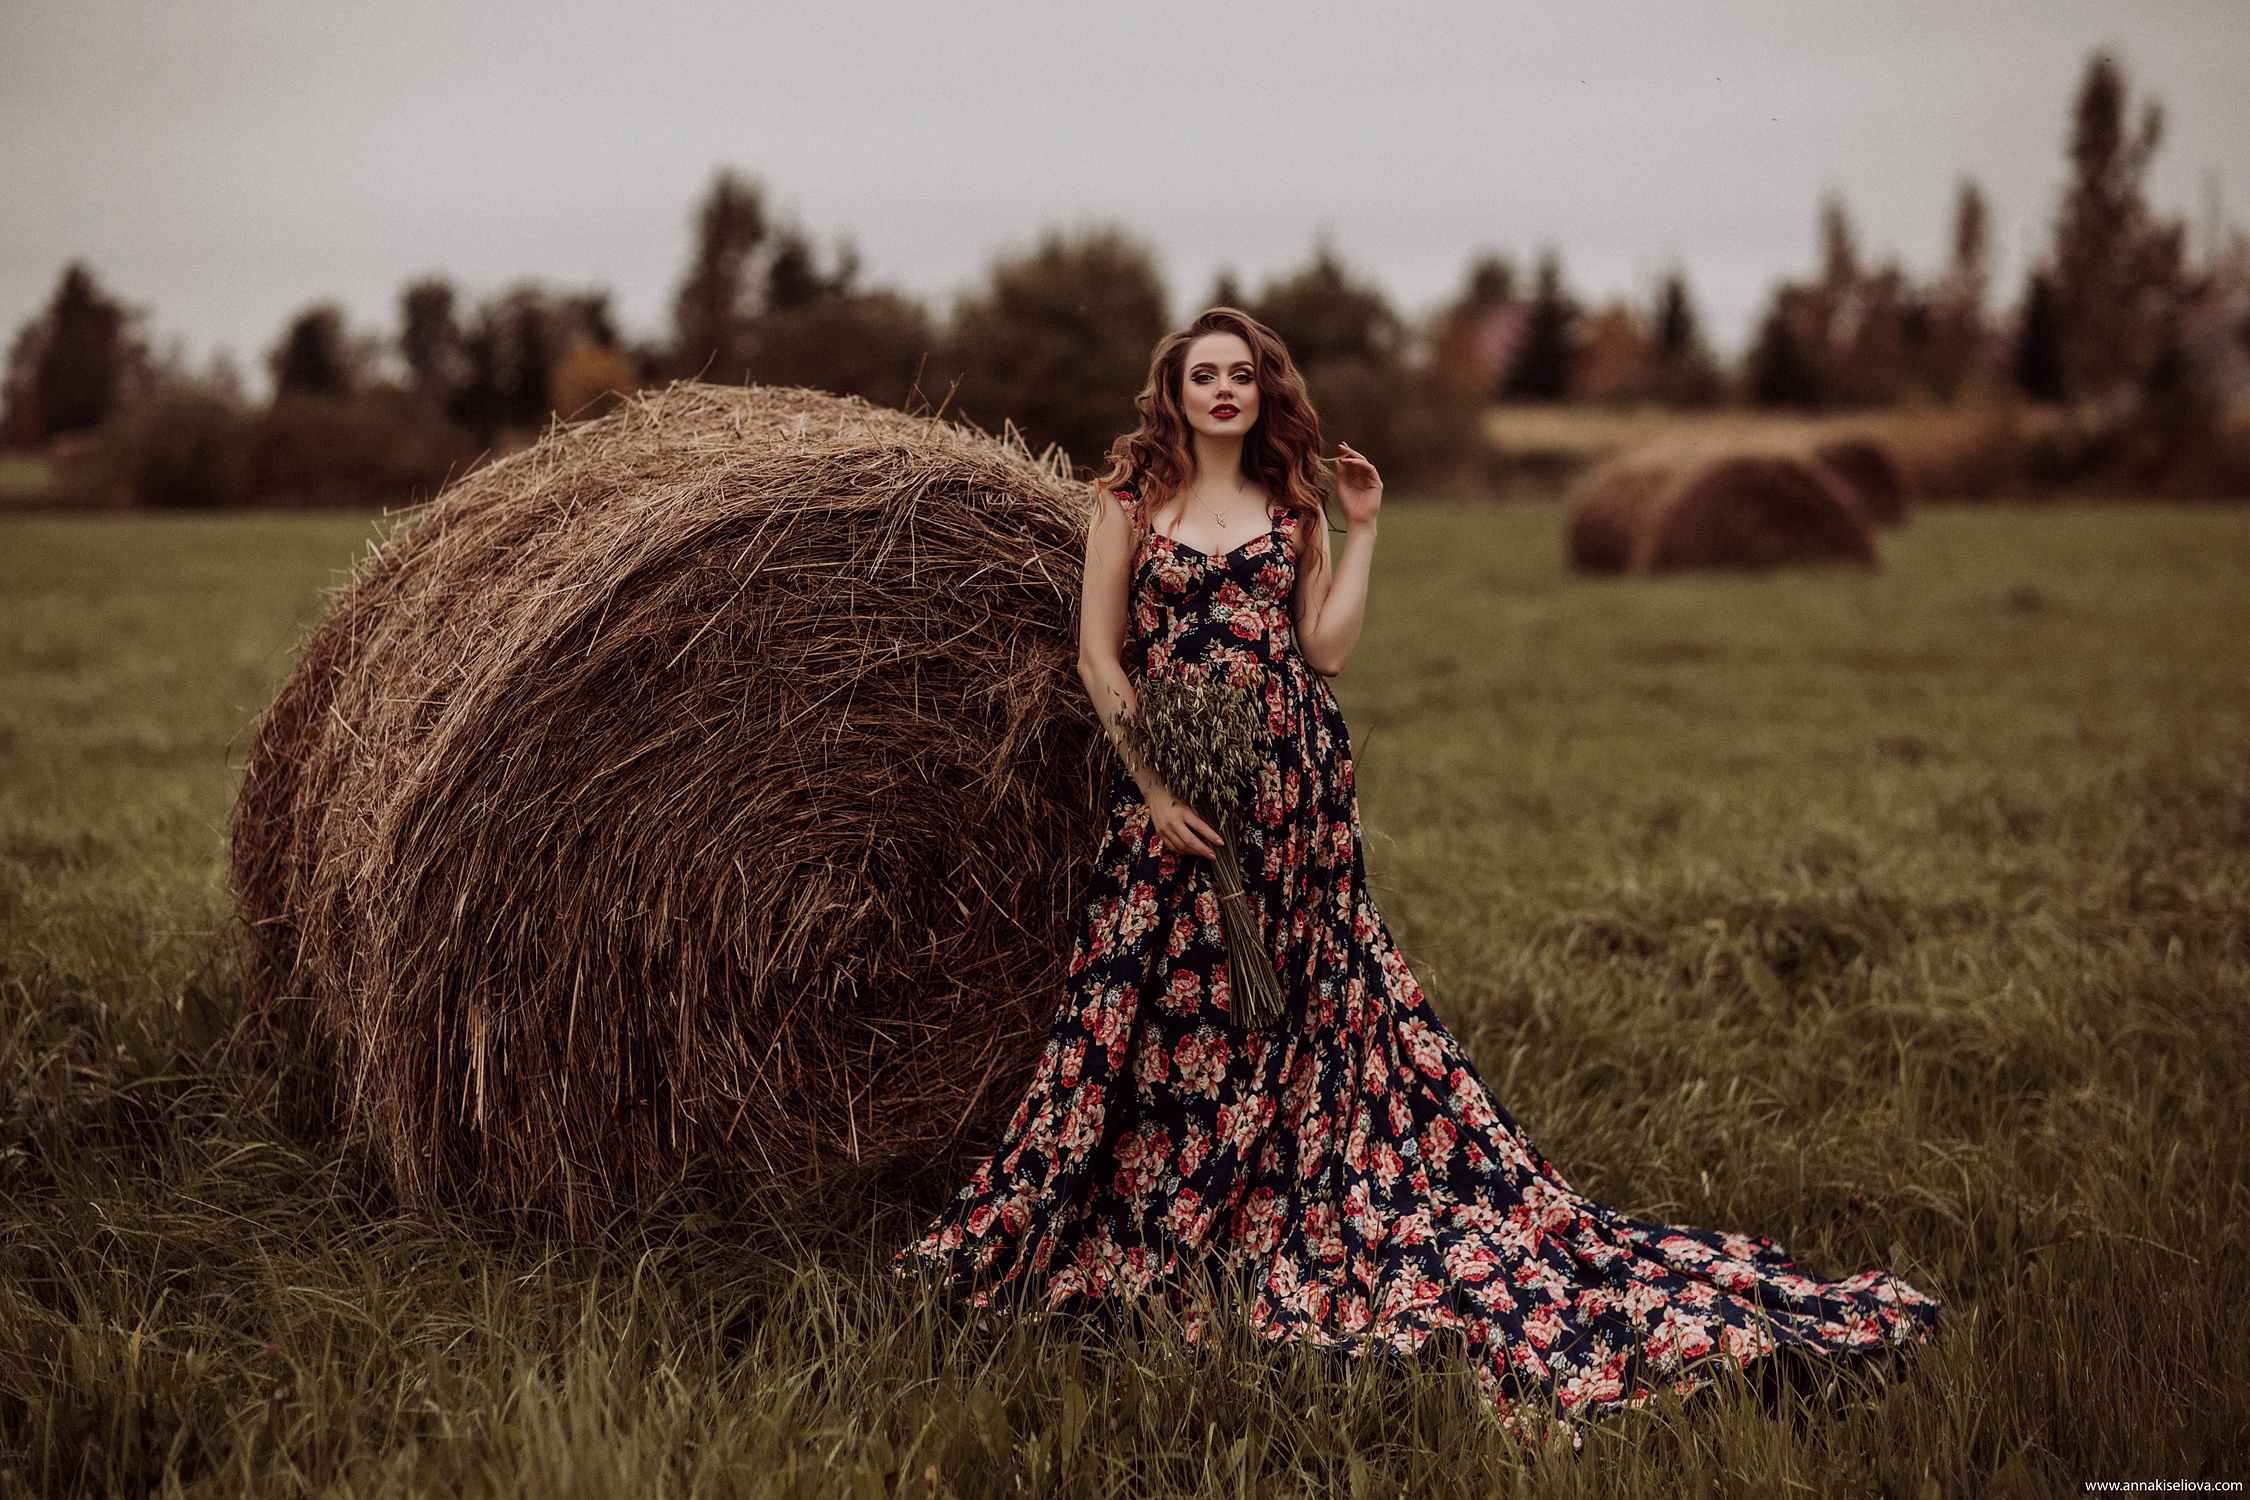 Women Model Brunette Looking At Viewer Flower Dress Grass Hay Women Outdoors Depth Of Field Dress 2250x1500